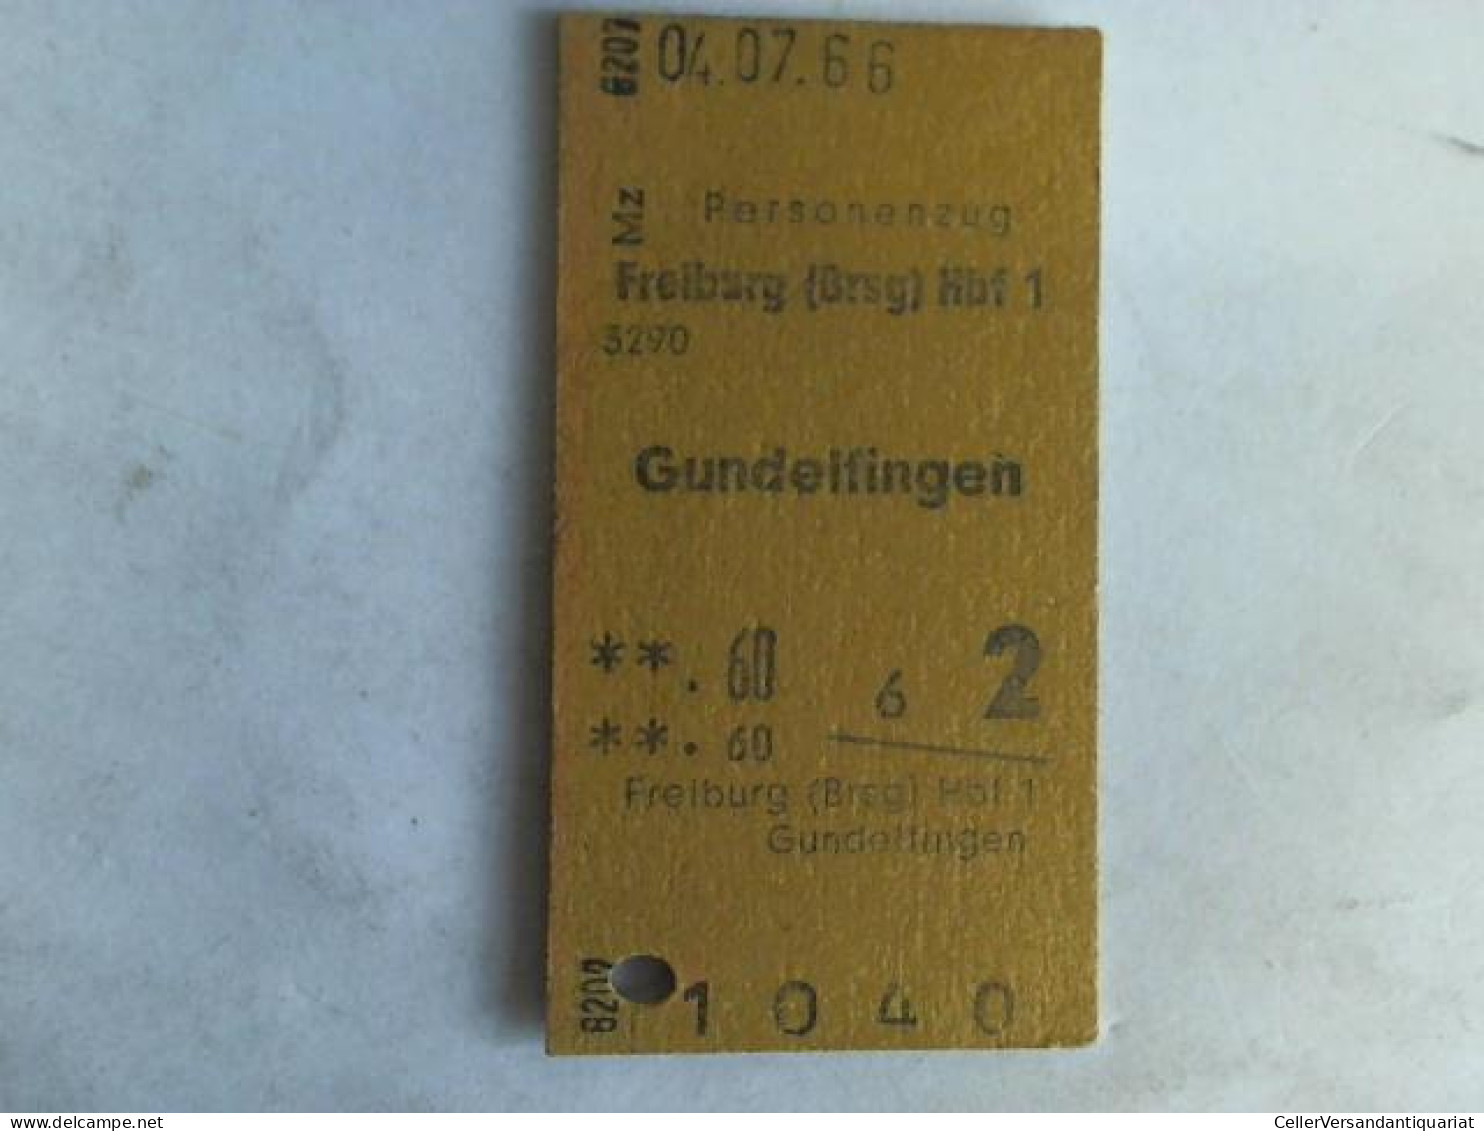 Fahrkarte Personenzug Freiburg (Breisg) Hbf 1 - Gundelfingen Von (Eisenbahn-Fahrkarte) - Unclassified